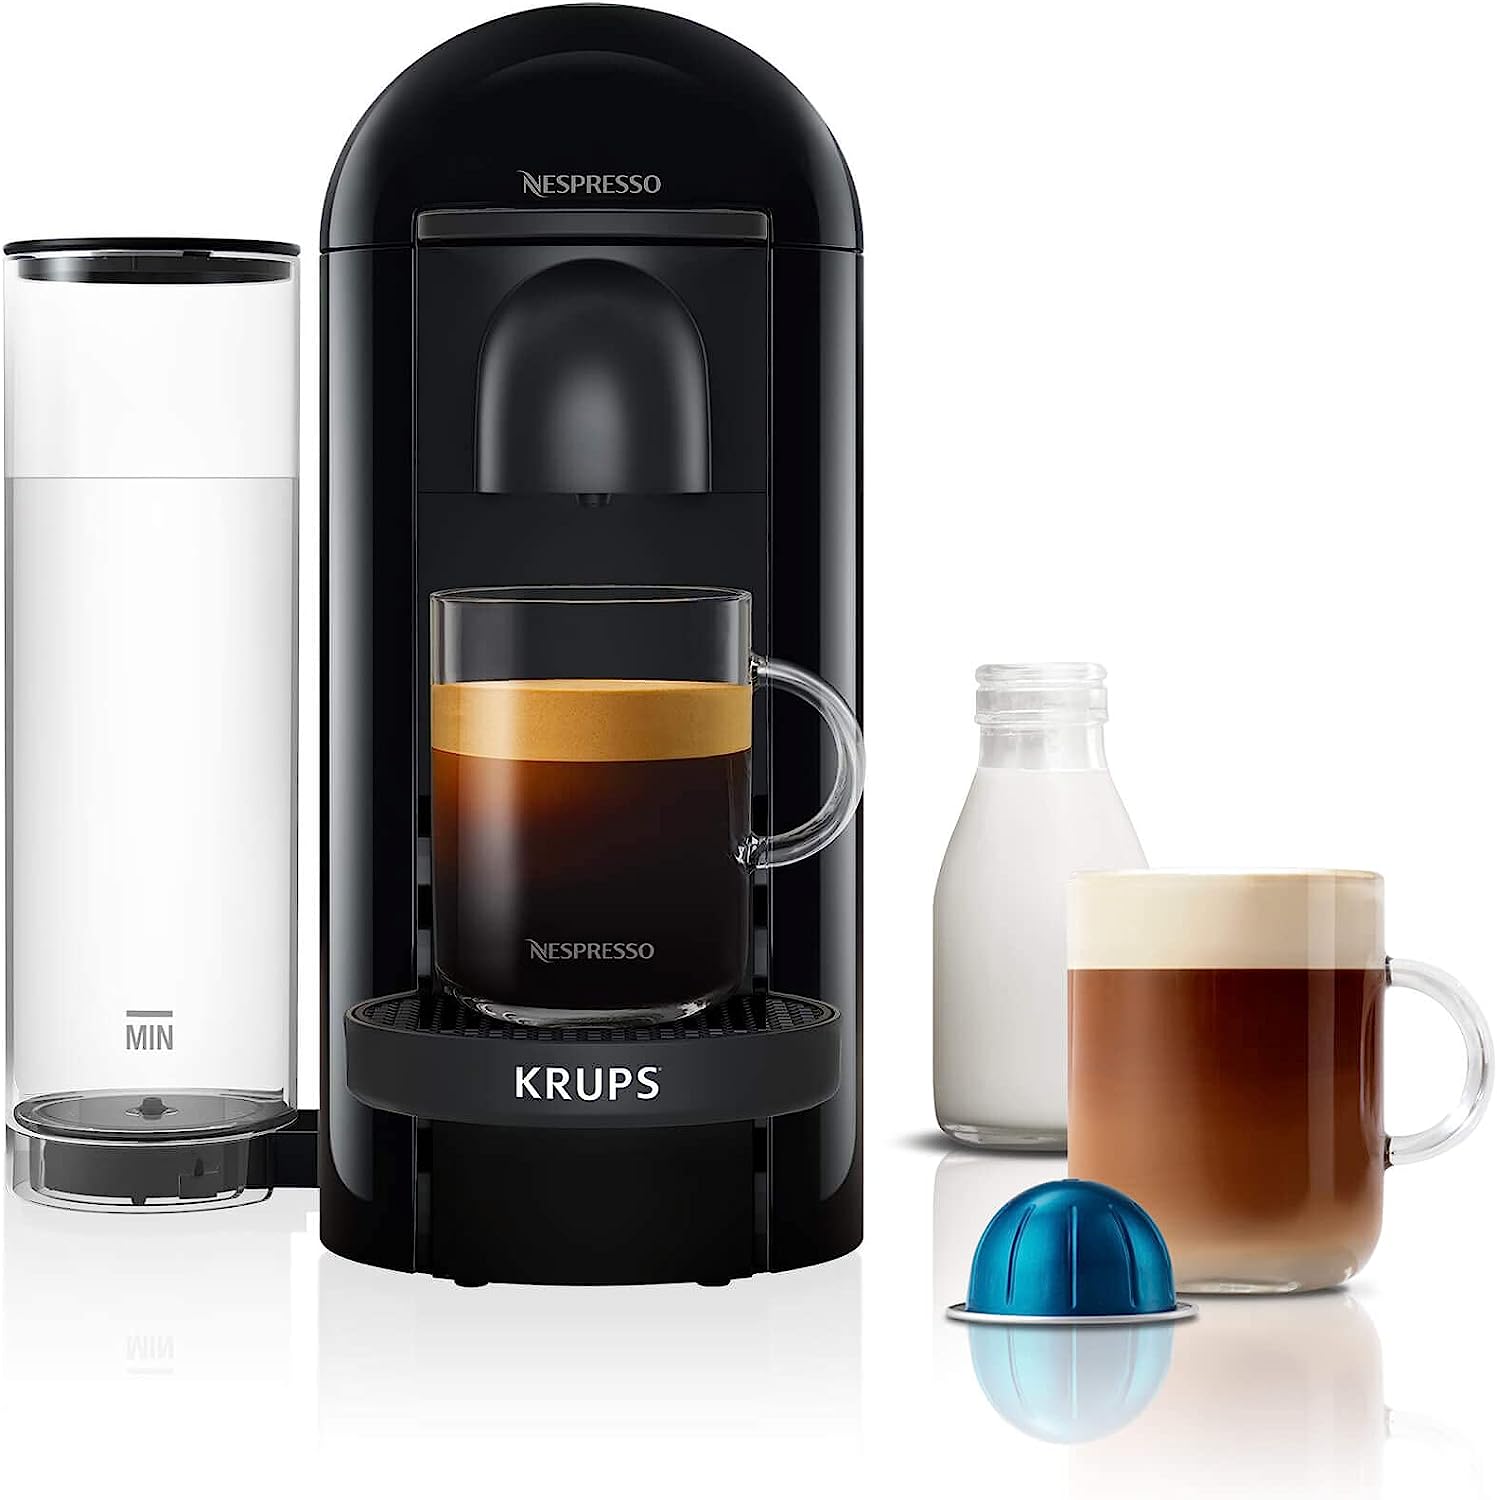 Käufer können die Nespresso Vertuo Plus XN903840 Kaffeemaschine mit 65 % Rabatt erwerben